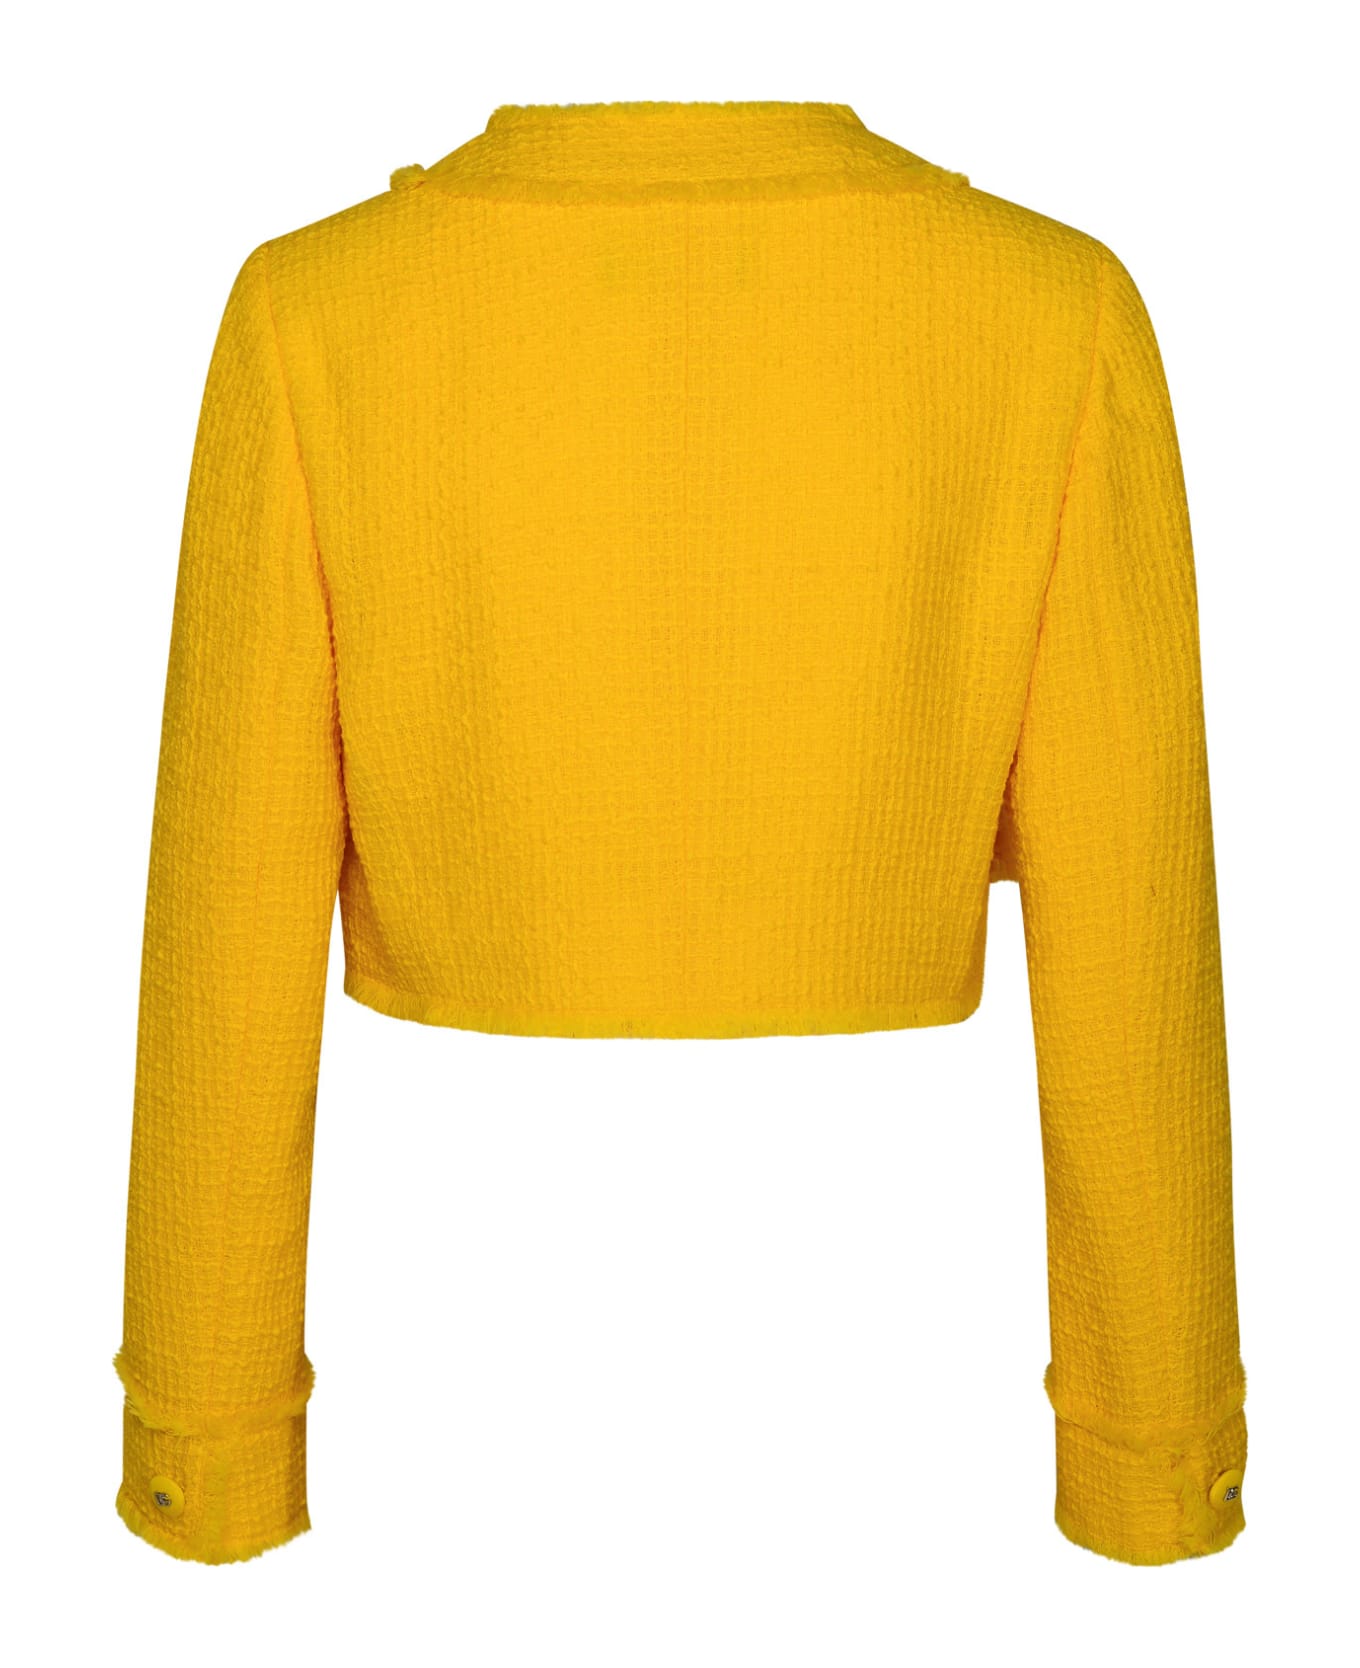 Dolce & Gabbana Yellow Wool Jacket - Yellow